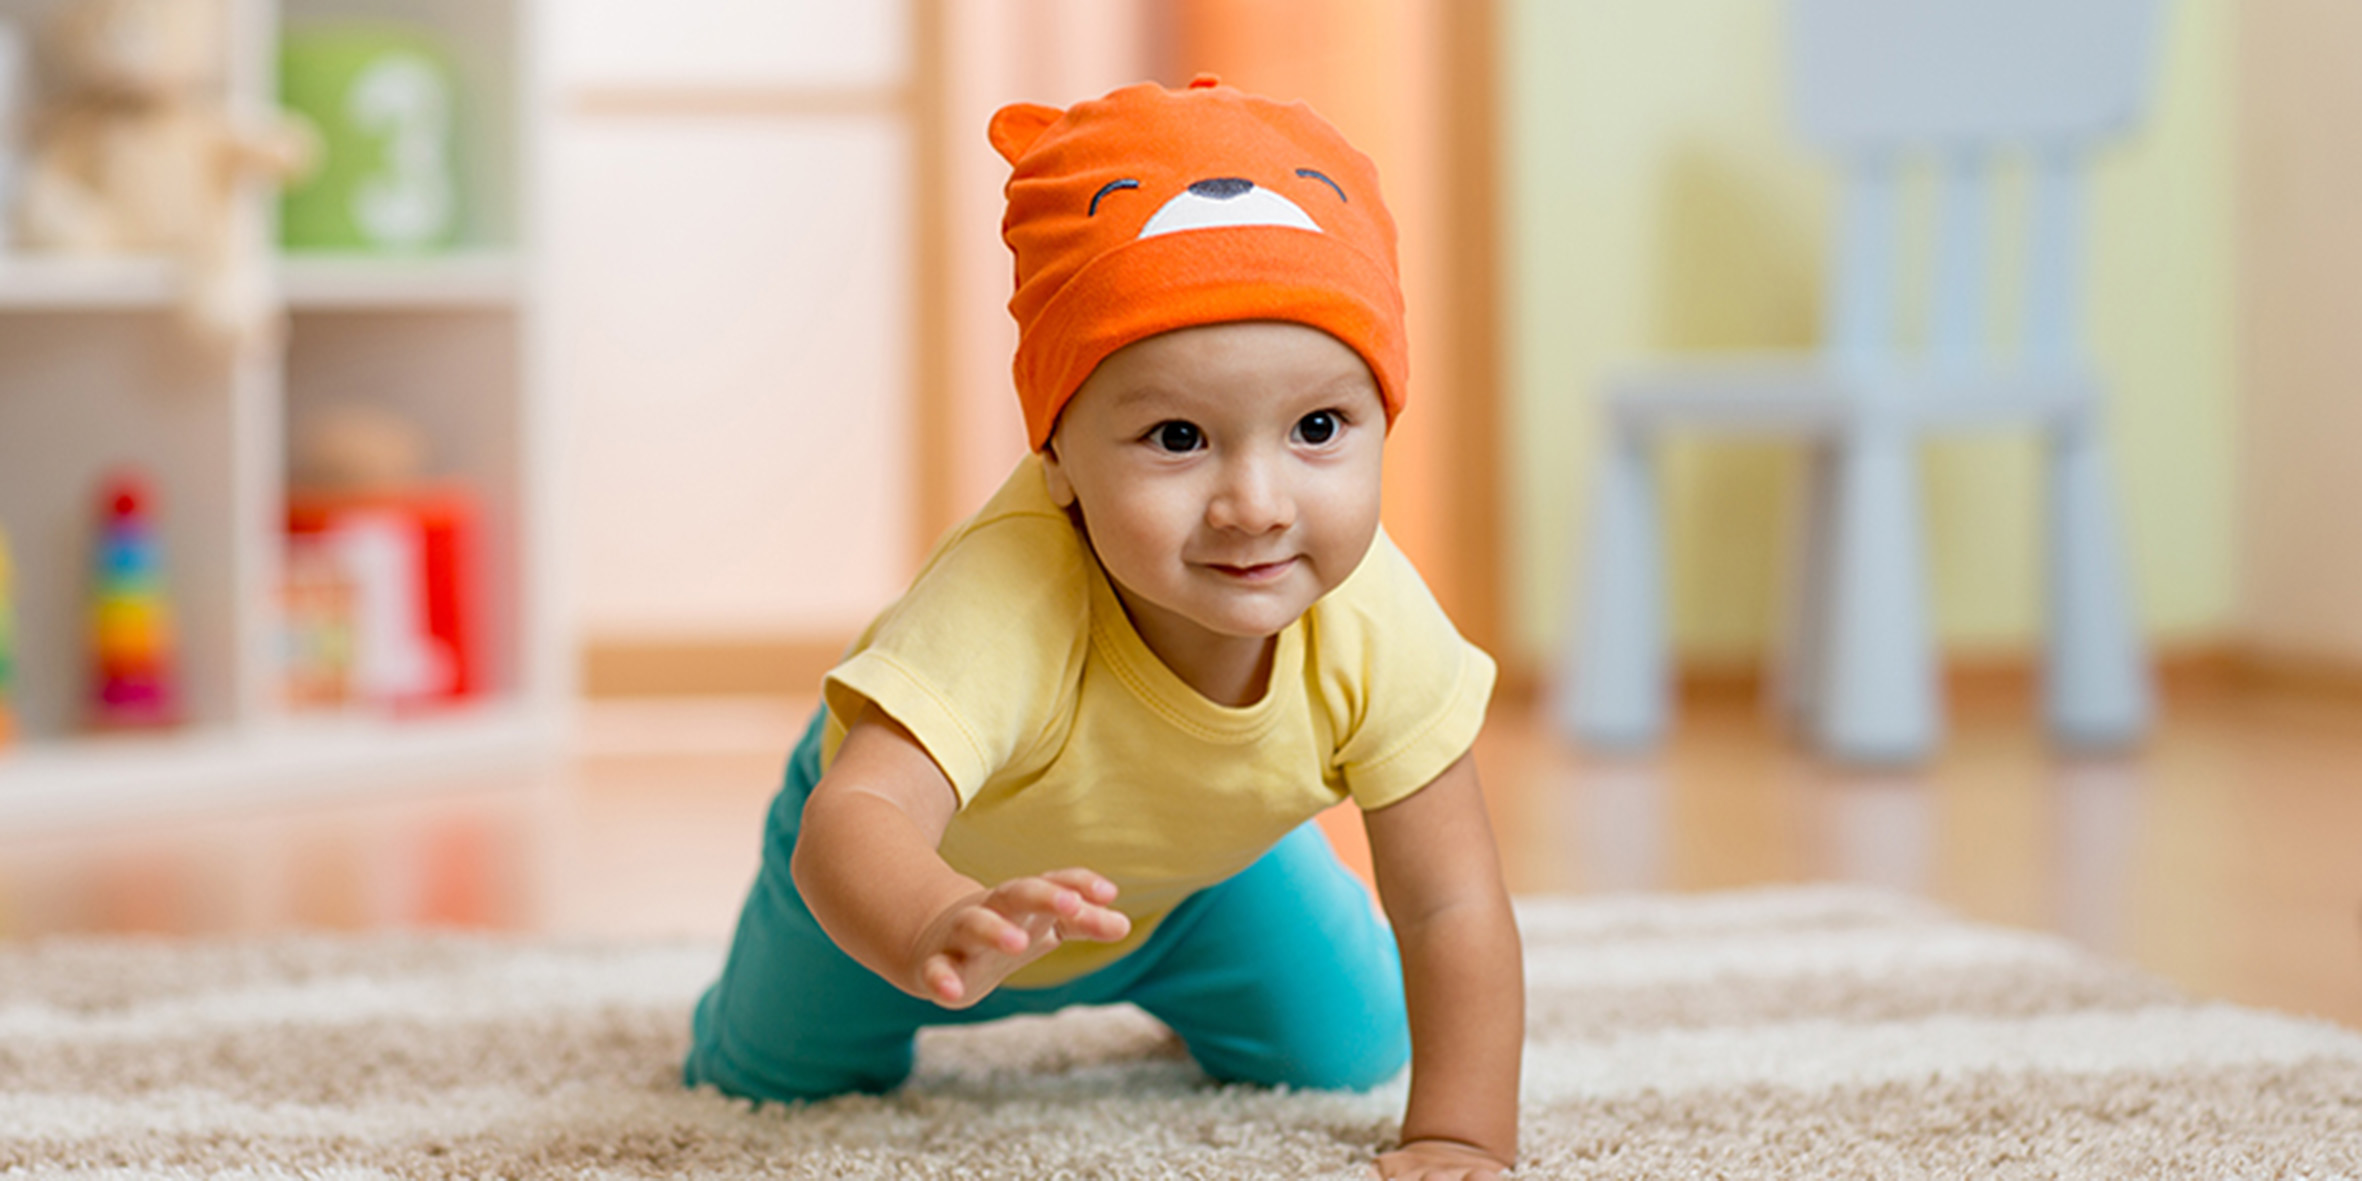 En liten bebis i orange mössa och gul tröja kryper runt på golvet